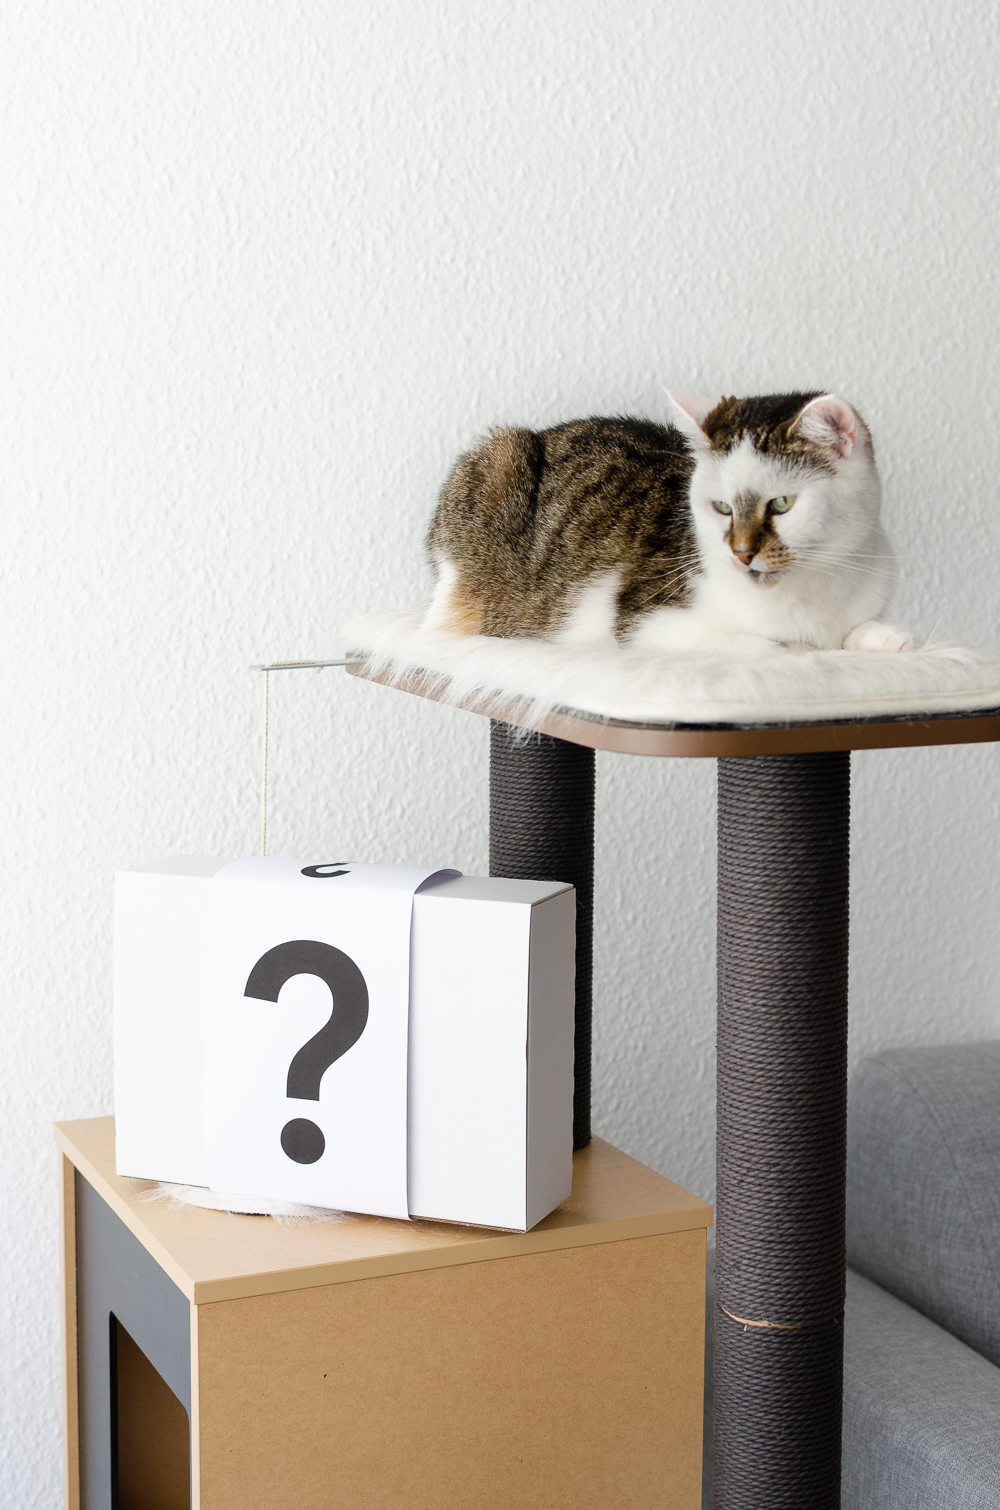 Katzensnack-wir teste Katzensnack-Katzen-andysparkles